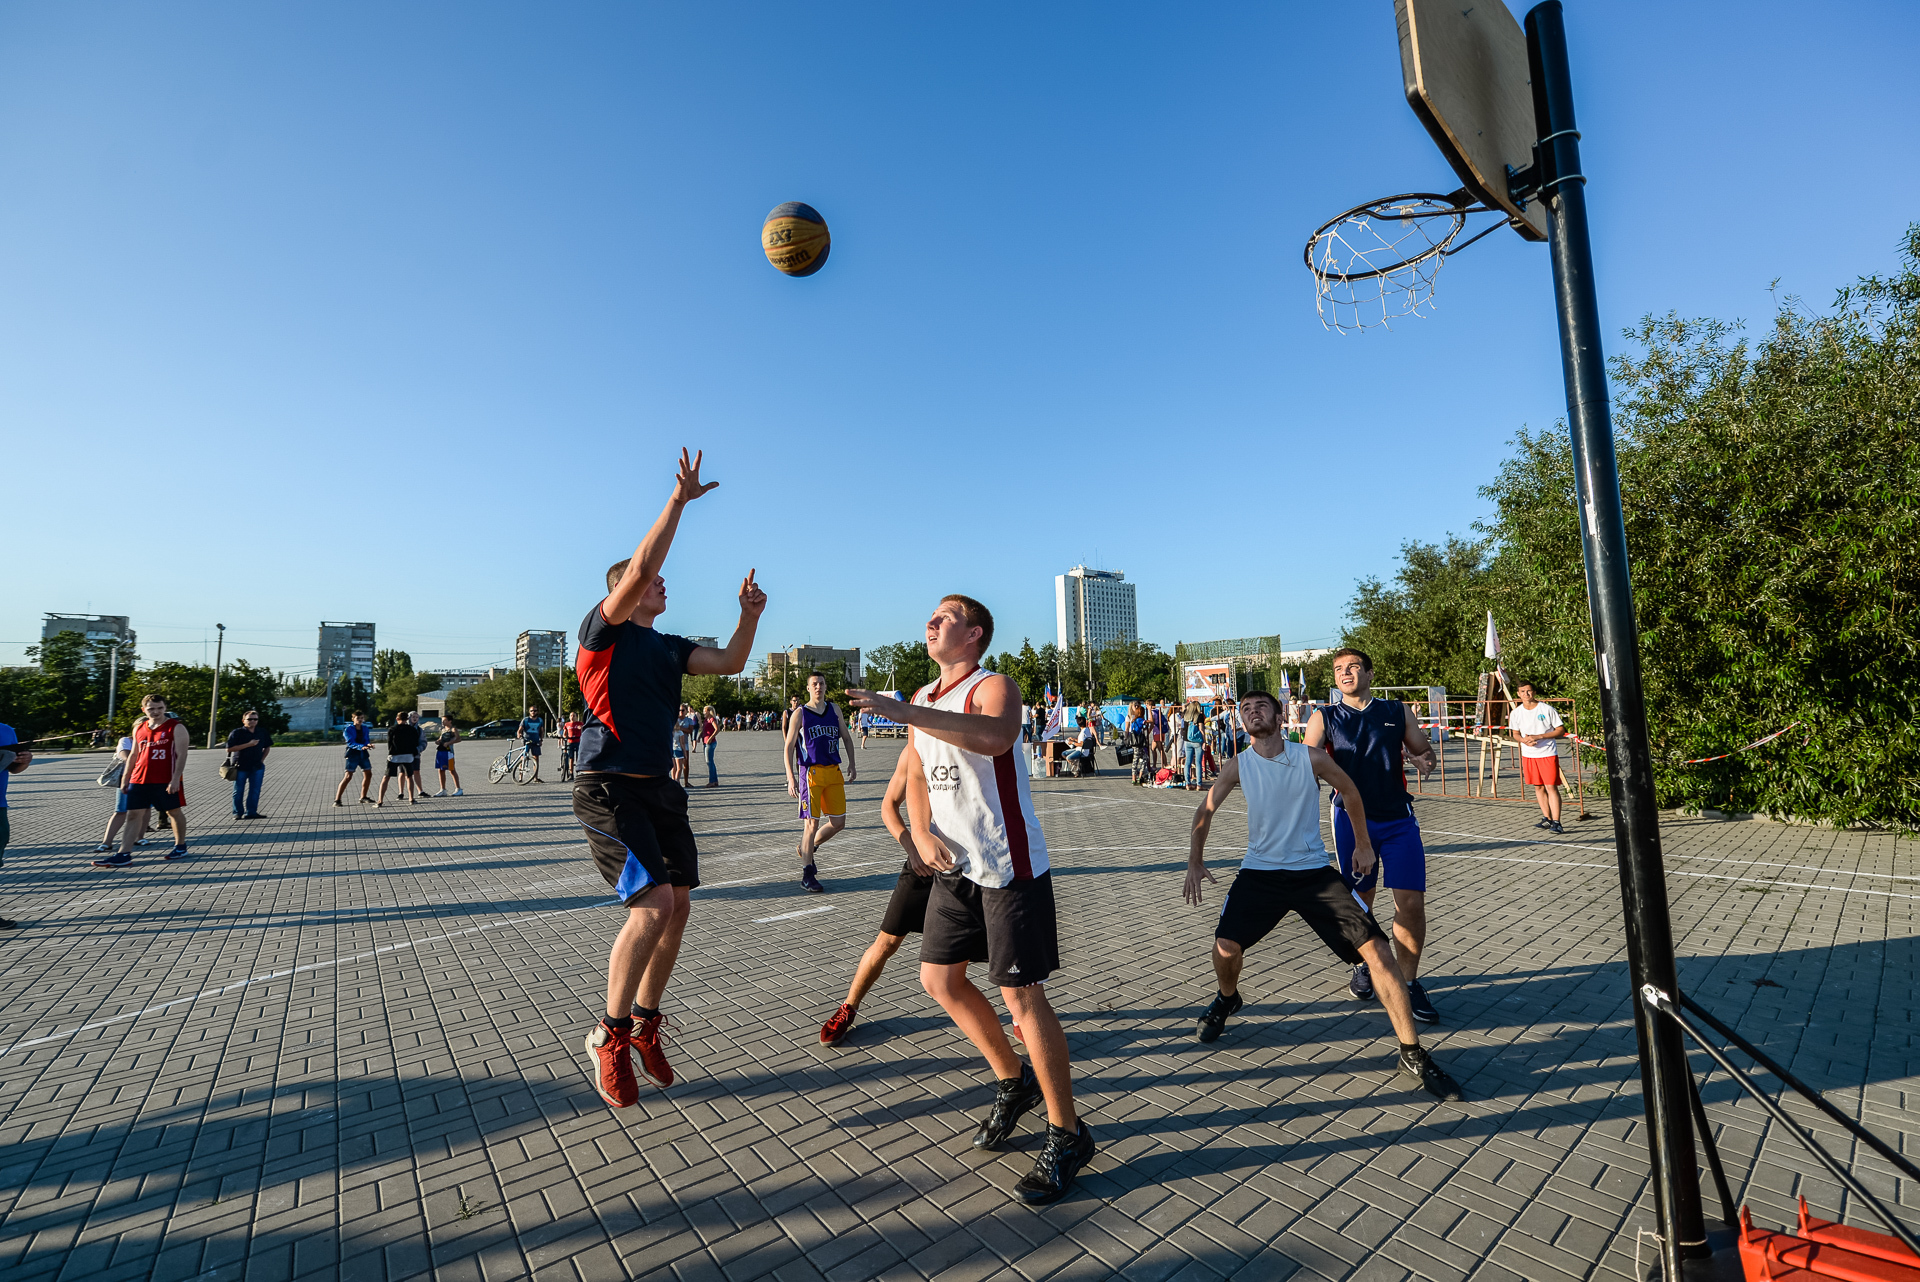 ПСБ откроет три новых региональных центра уличного баскетбола до конца 2021 года